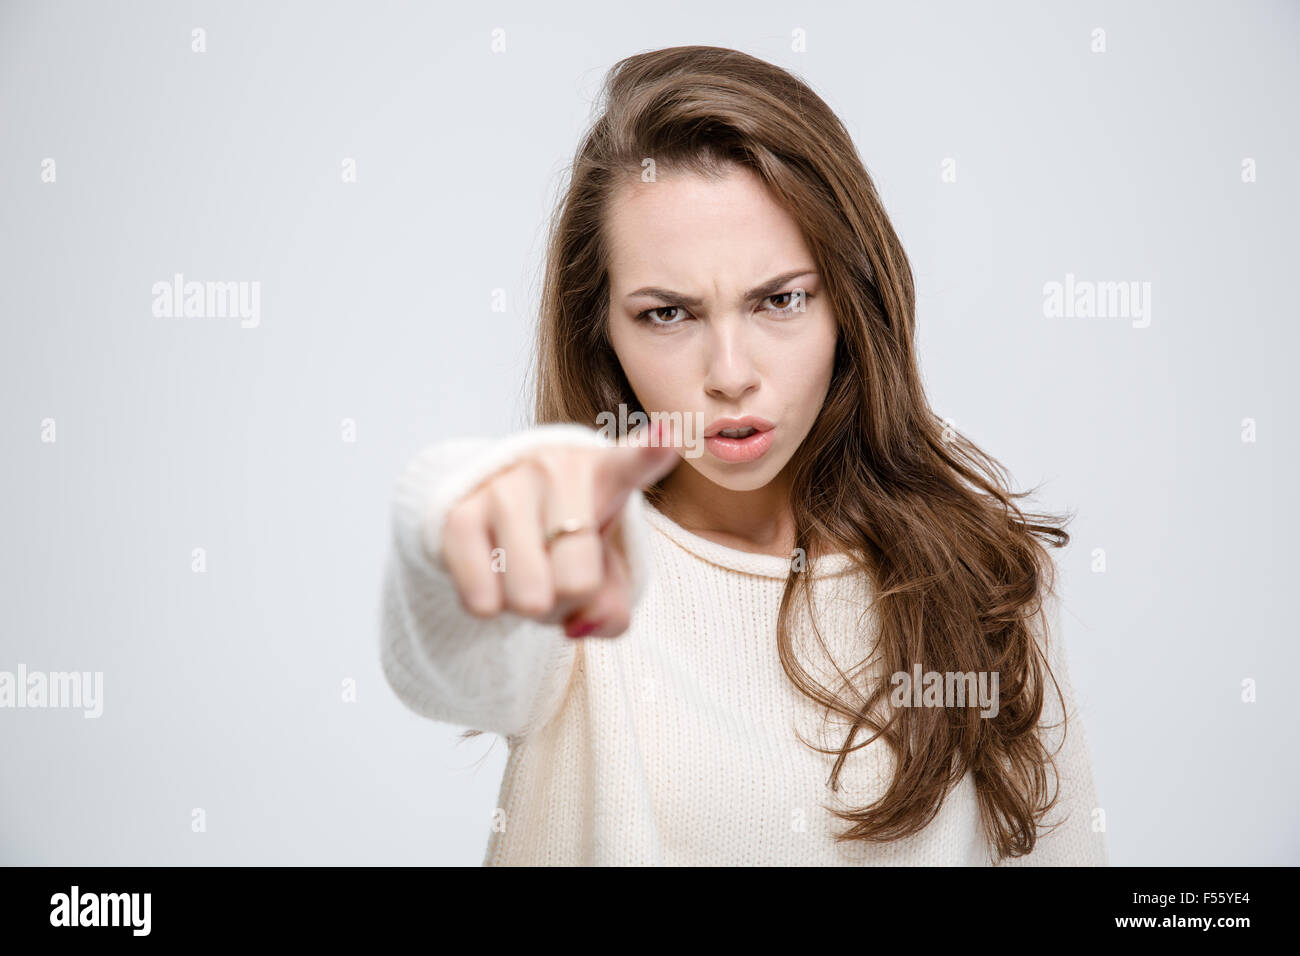 Porträt von eine junge Frau wütend Zeigefinger in die Kamera auf einem weißen Hintergrund isoliert Stockfoto